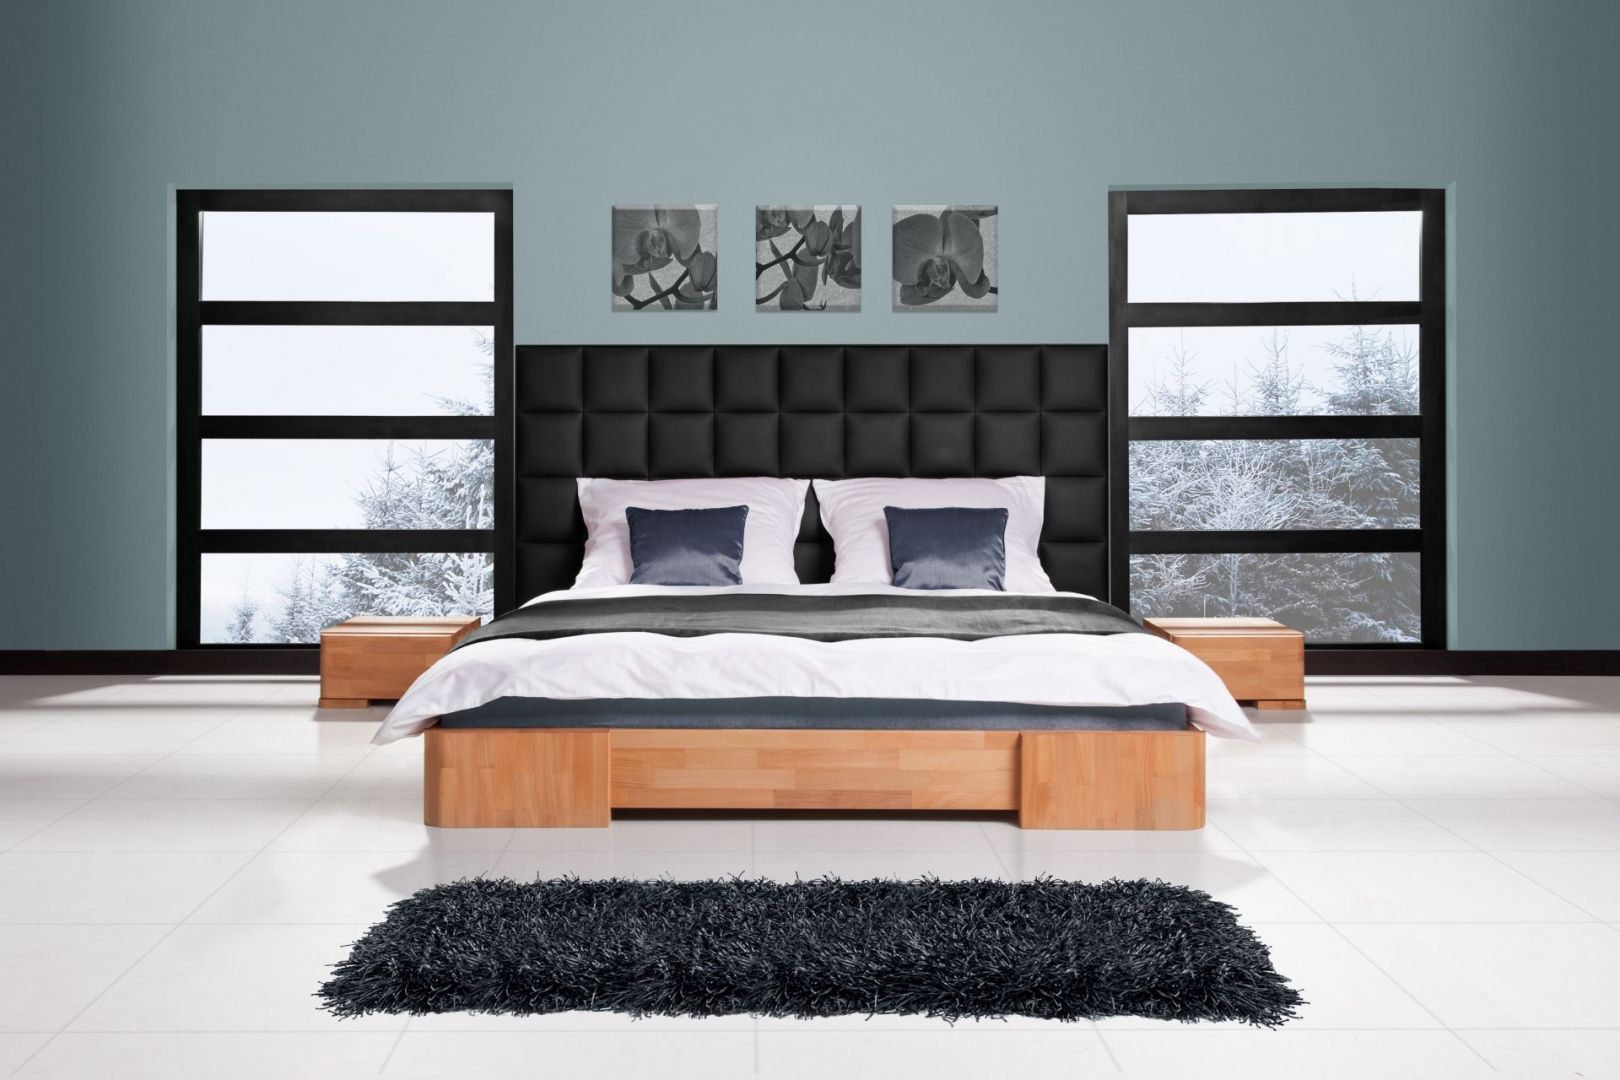 Bukowe łóżko Bit z panelem ściennym to ciekawa propozycja do sypialni. Fot. Beds.pl